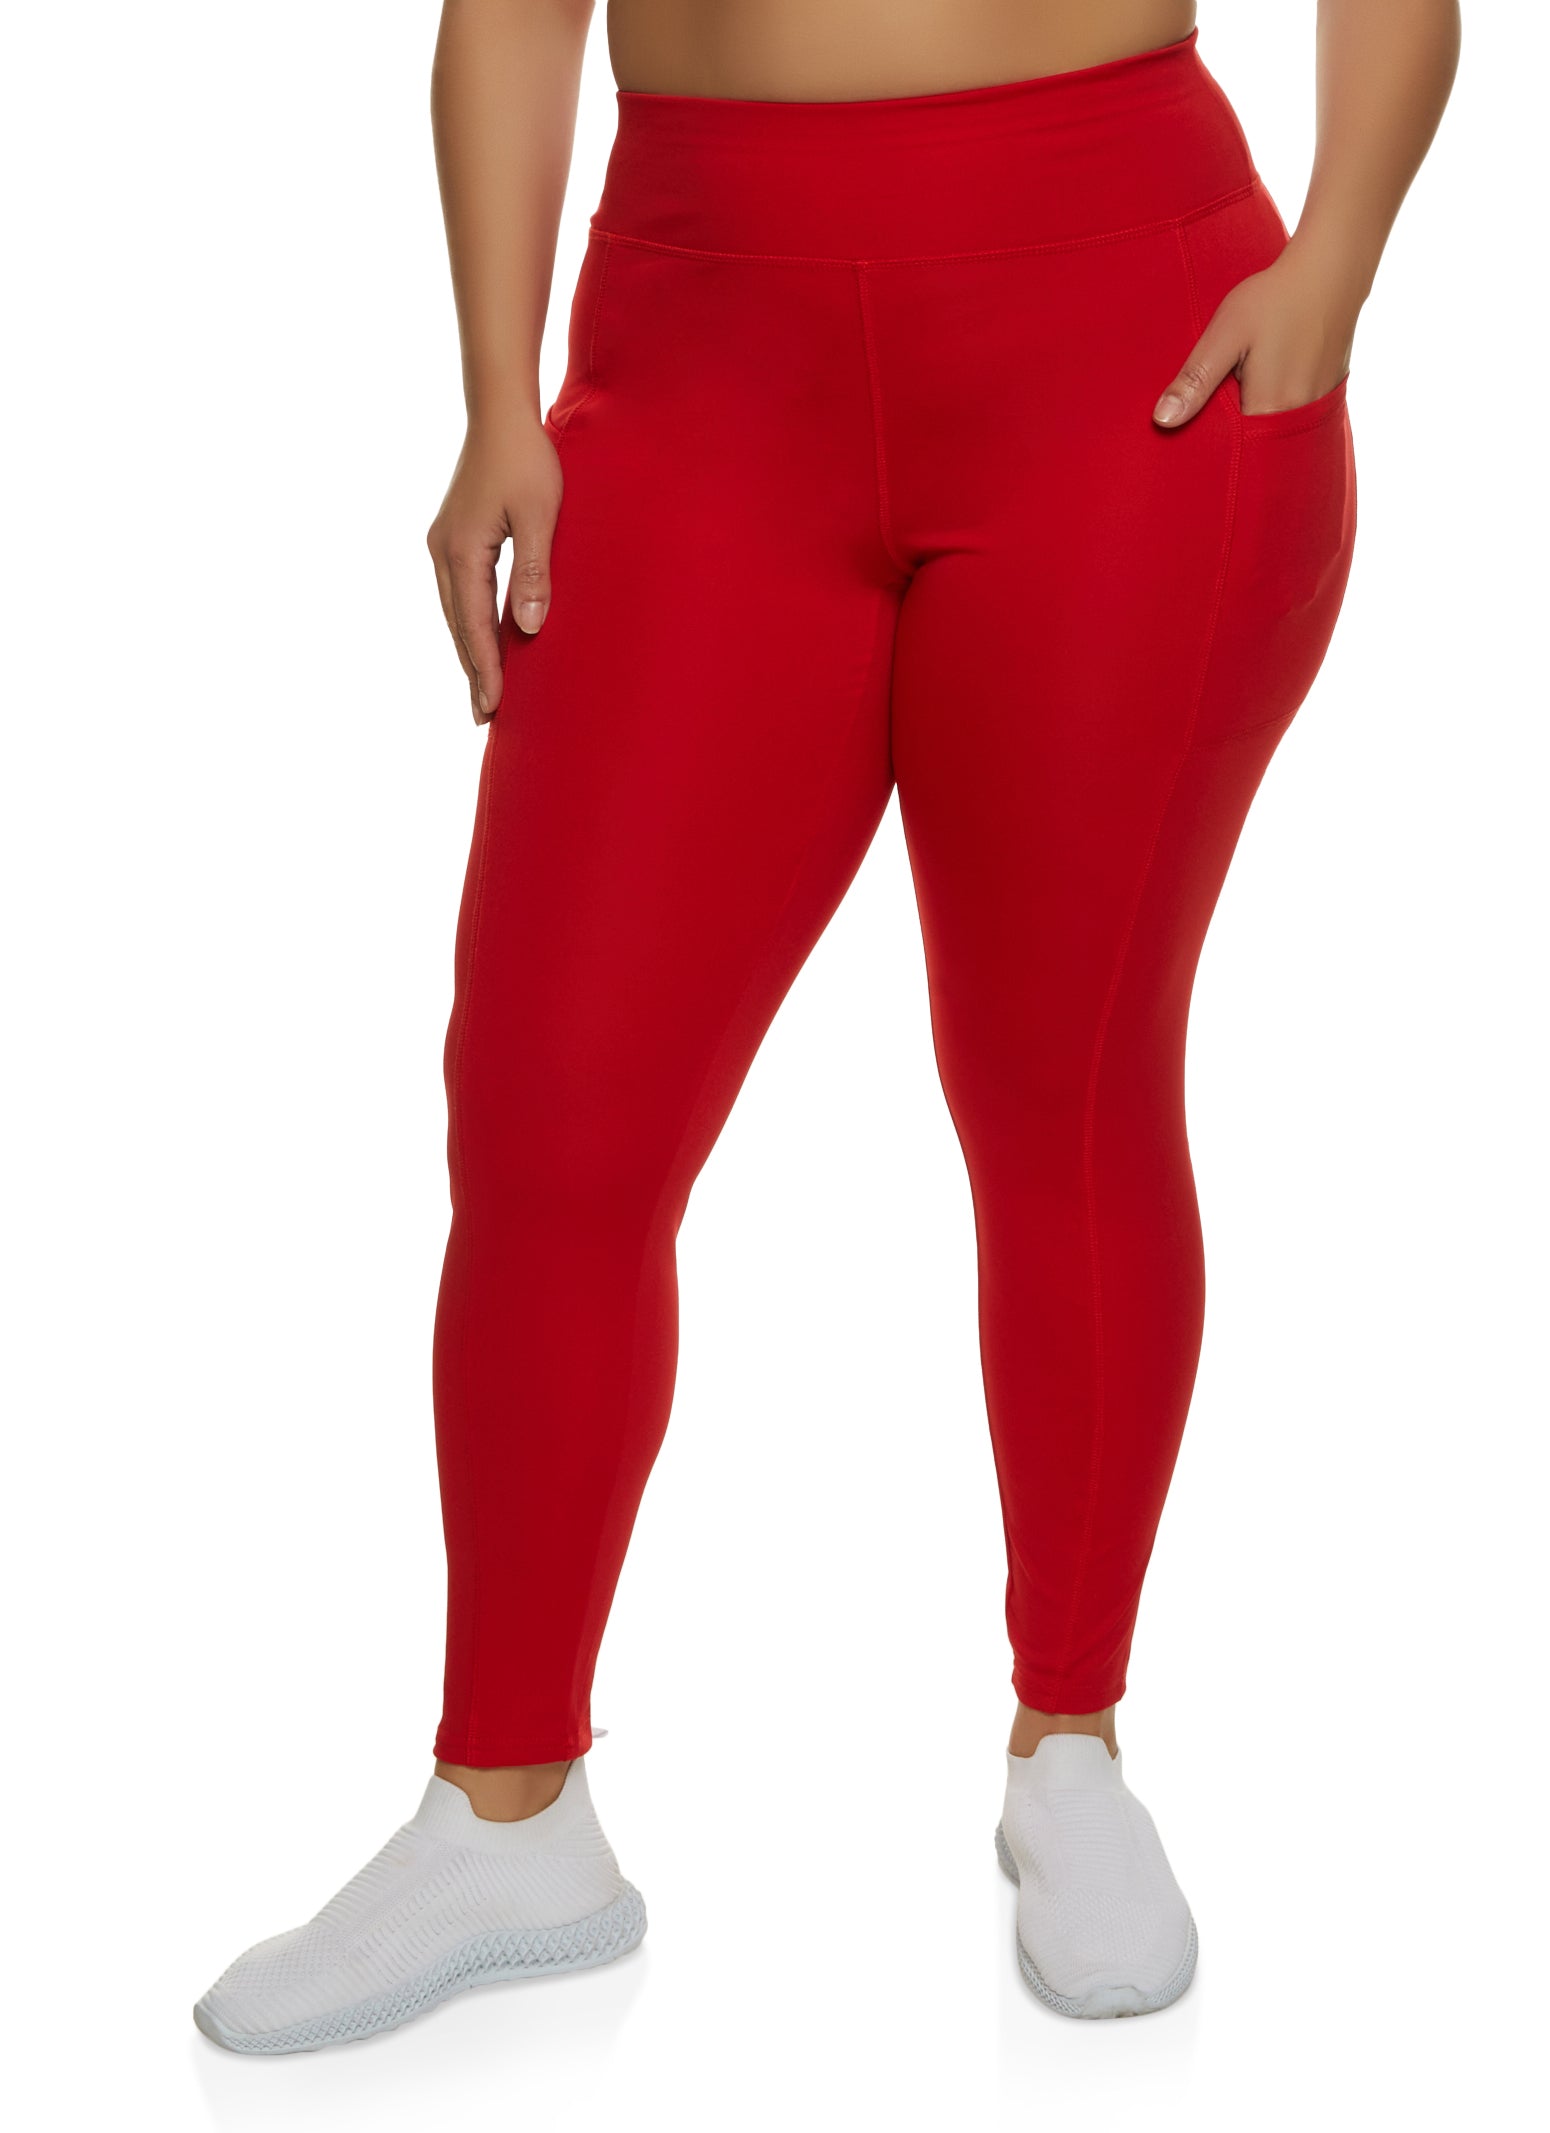 Capri Red Plus Size Leggings for Women for sale